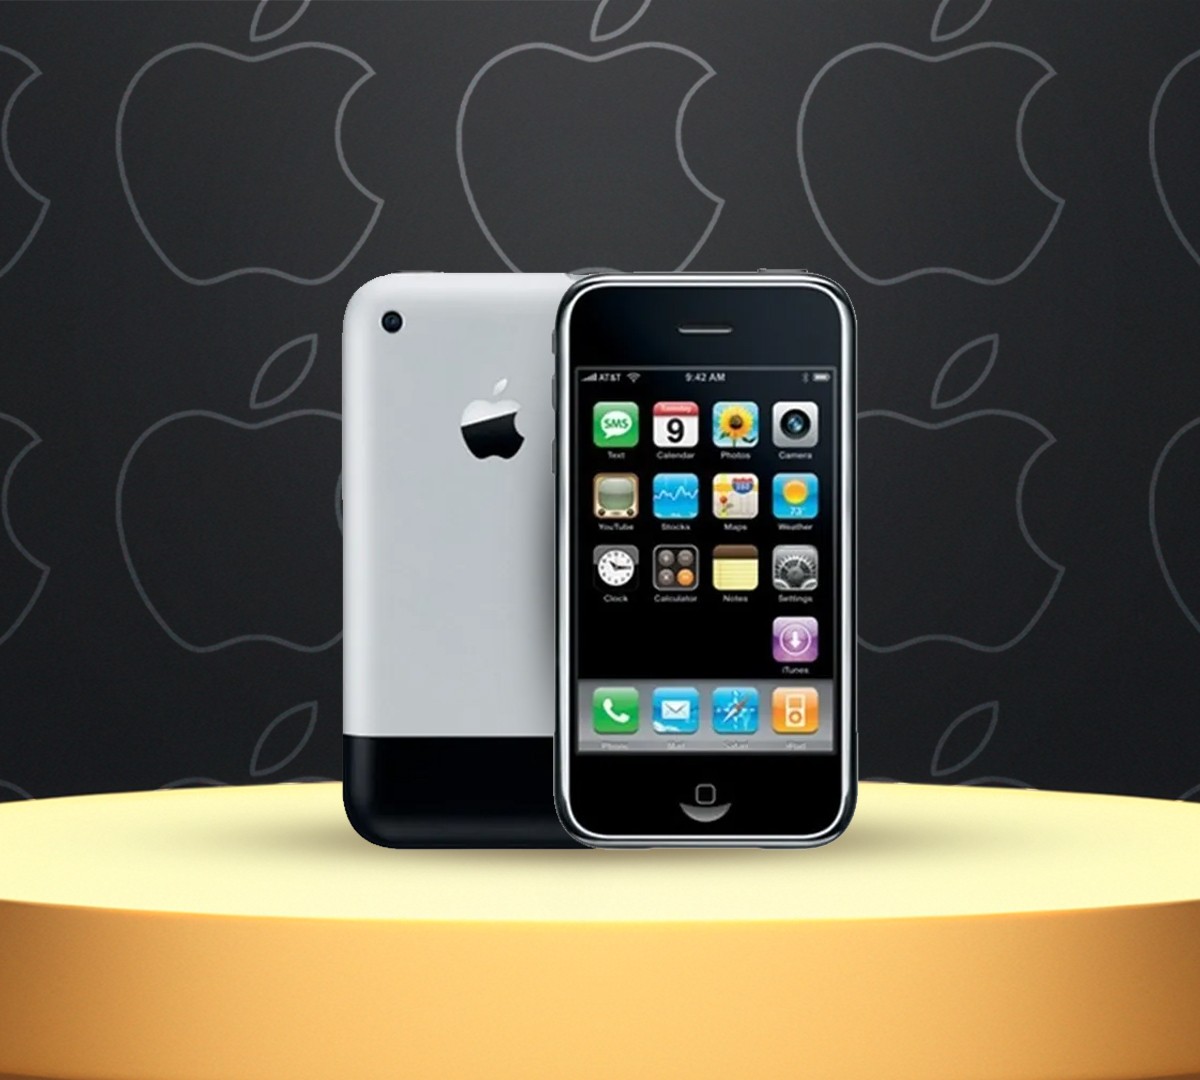 Apple iPhone de 1ª geração é comprado por quase R$ 1 milhão em